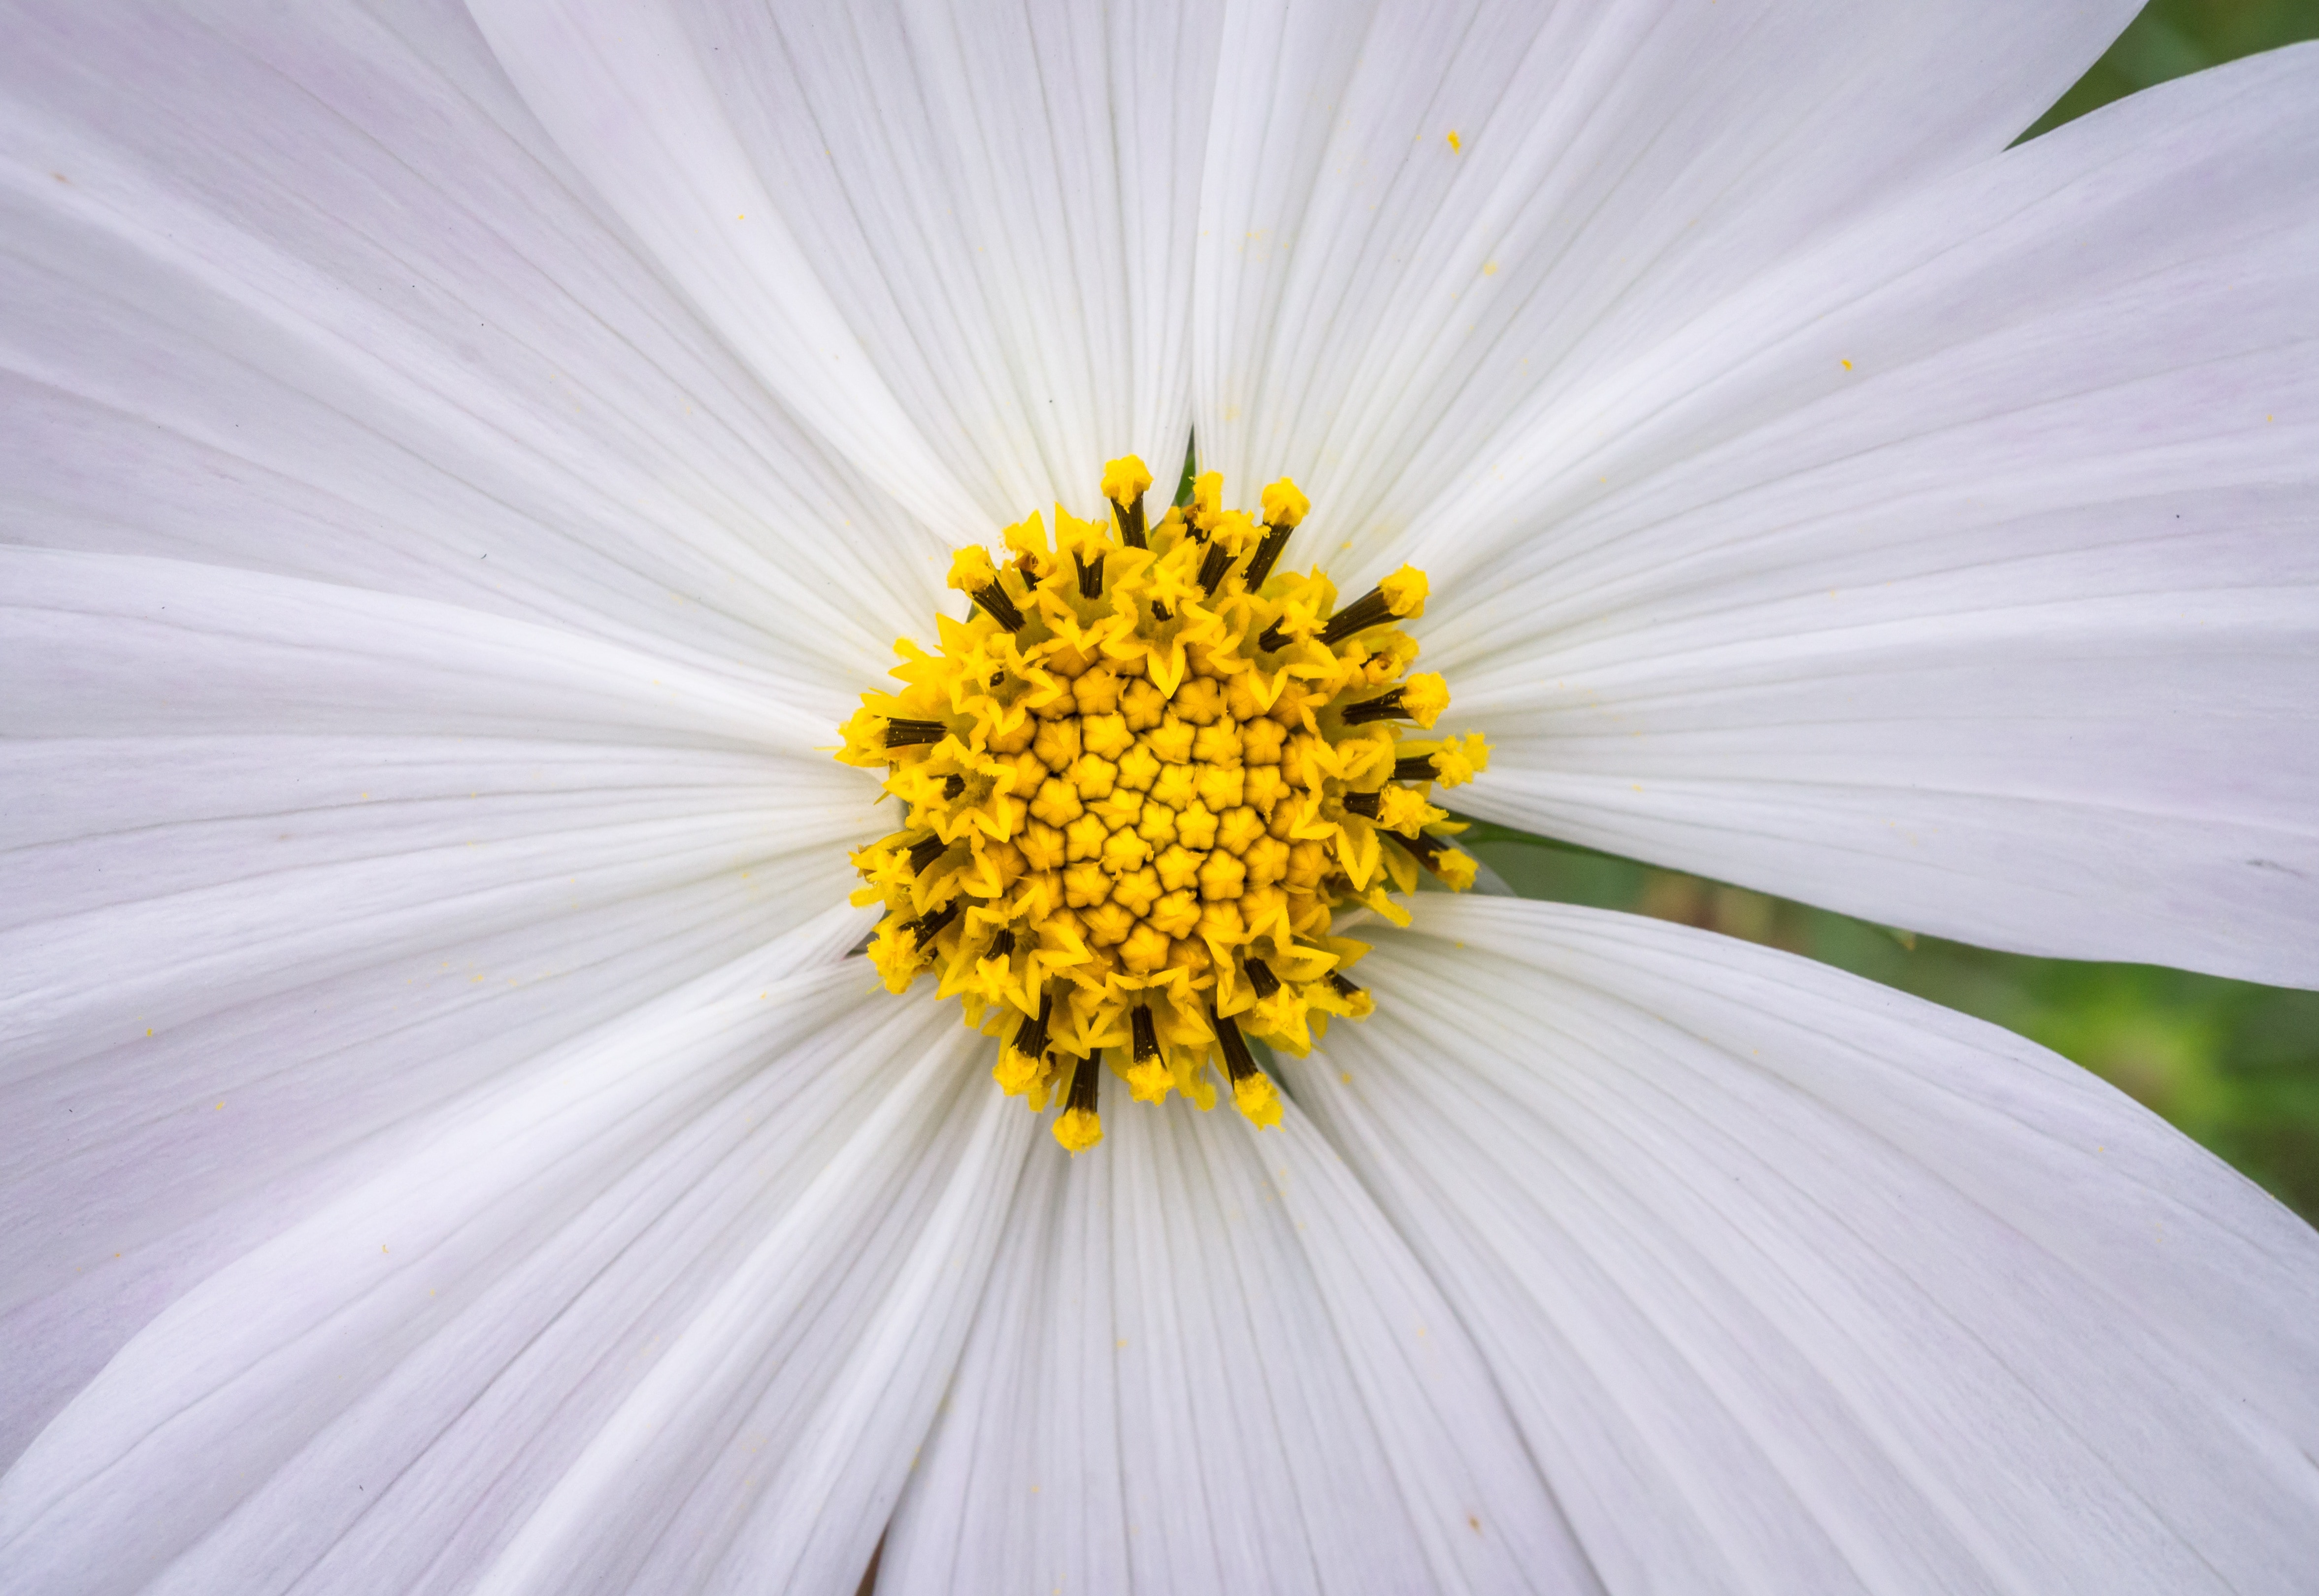 white 8 petaled flower